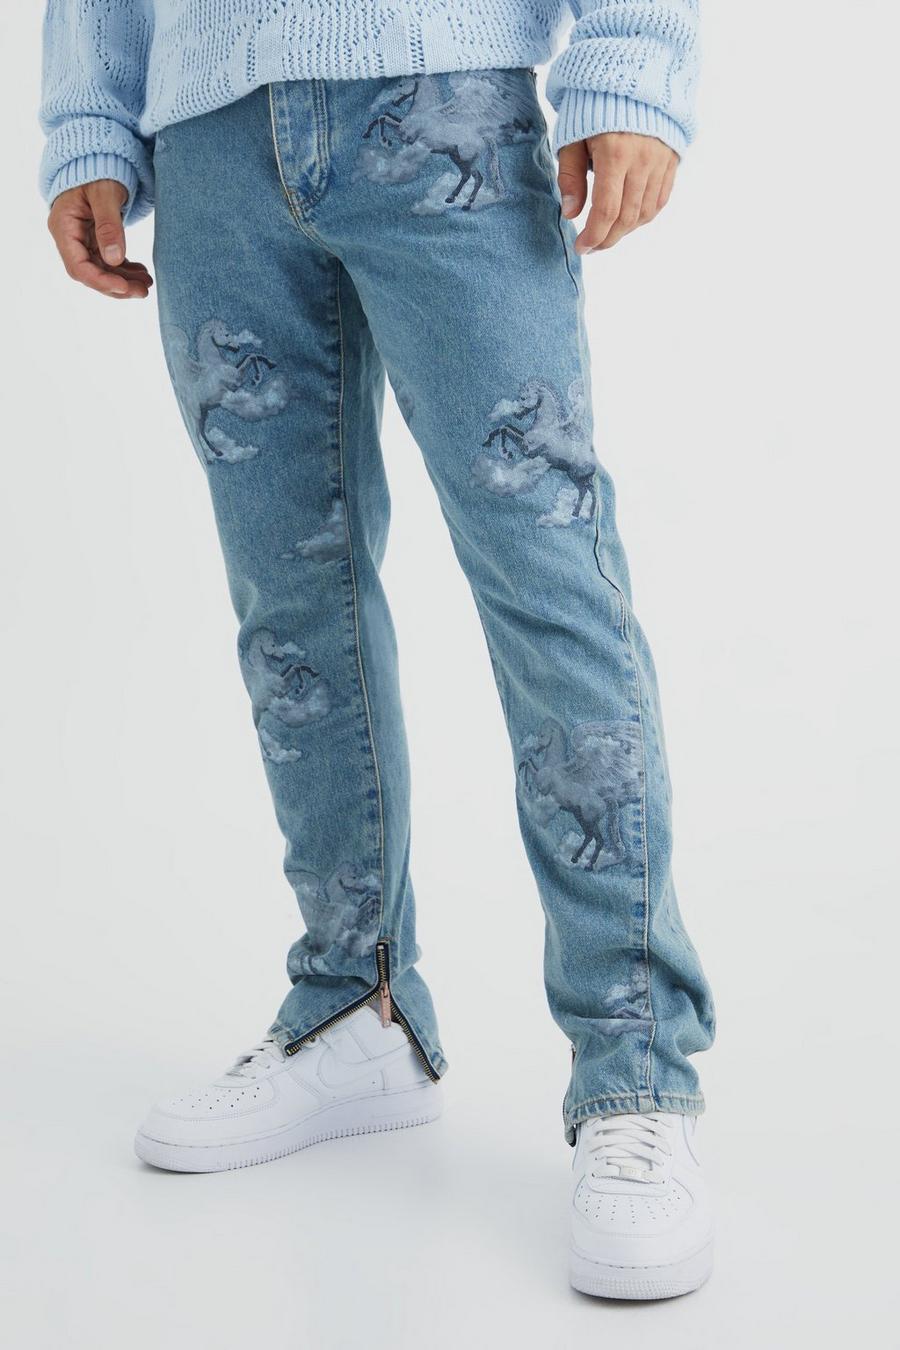 Jeans Slim Fit in denim rigido con grafica all over e inserti, Antique wash